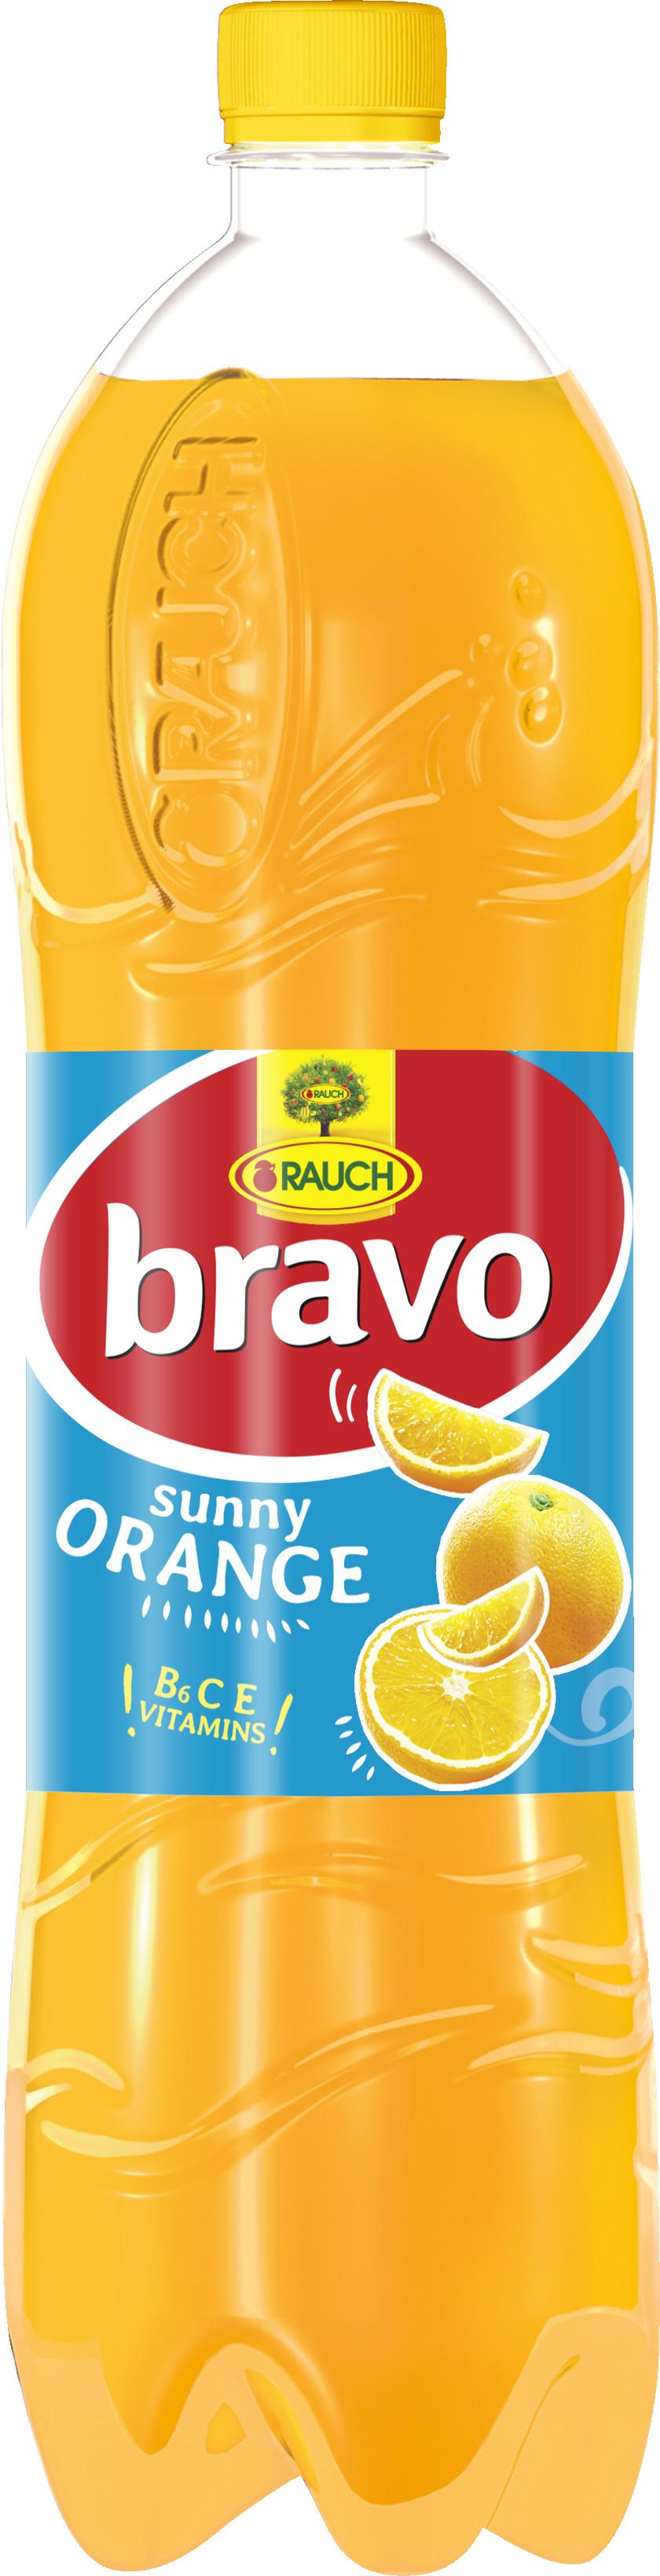 Slika za Sok narandža Bravo sunny 1.5l